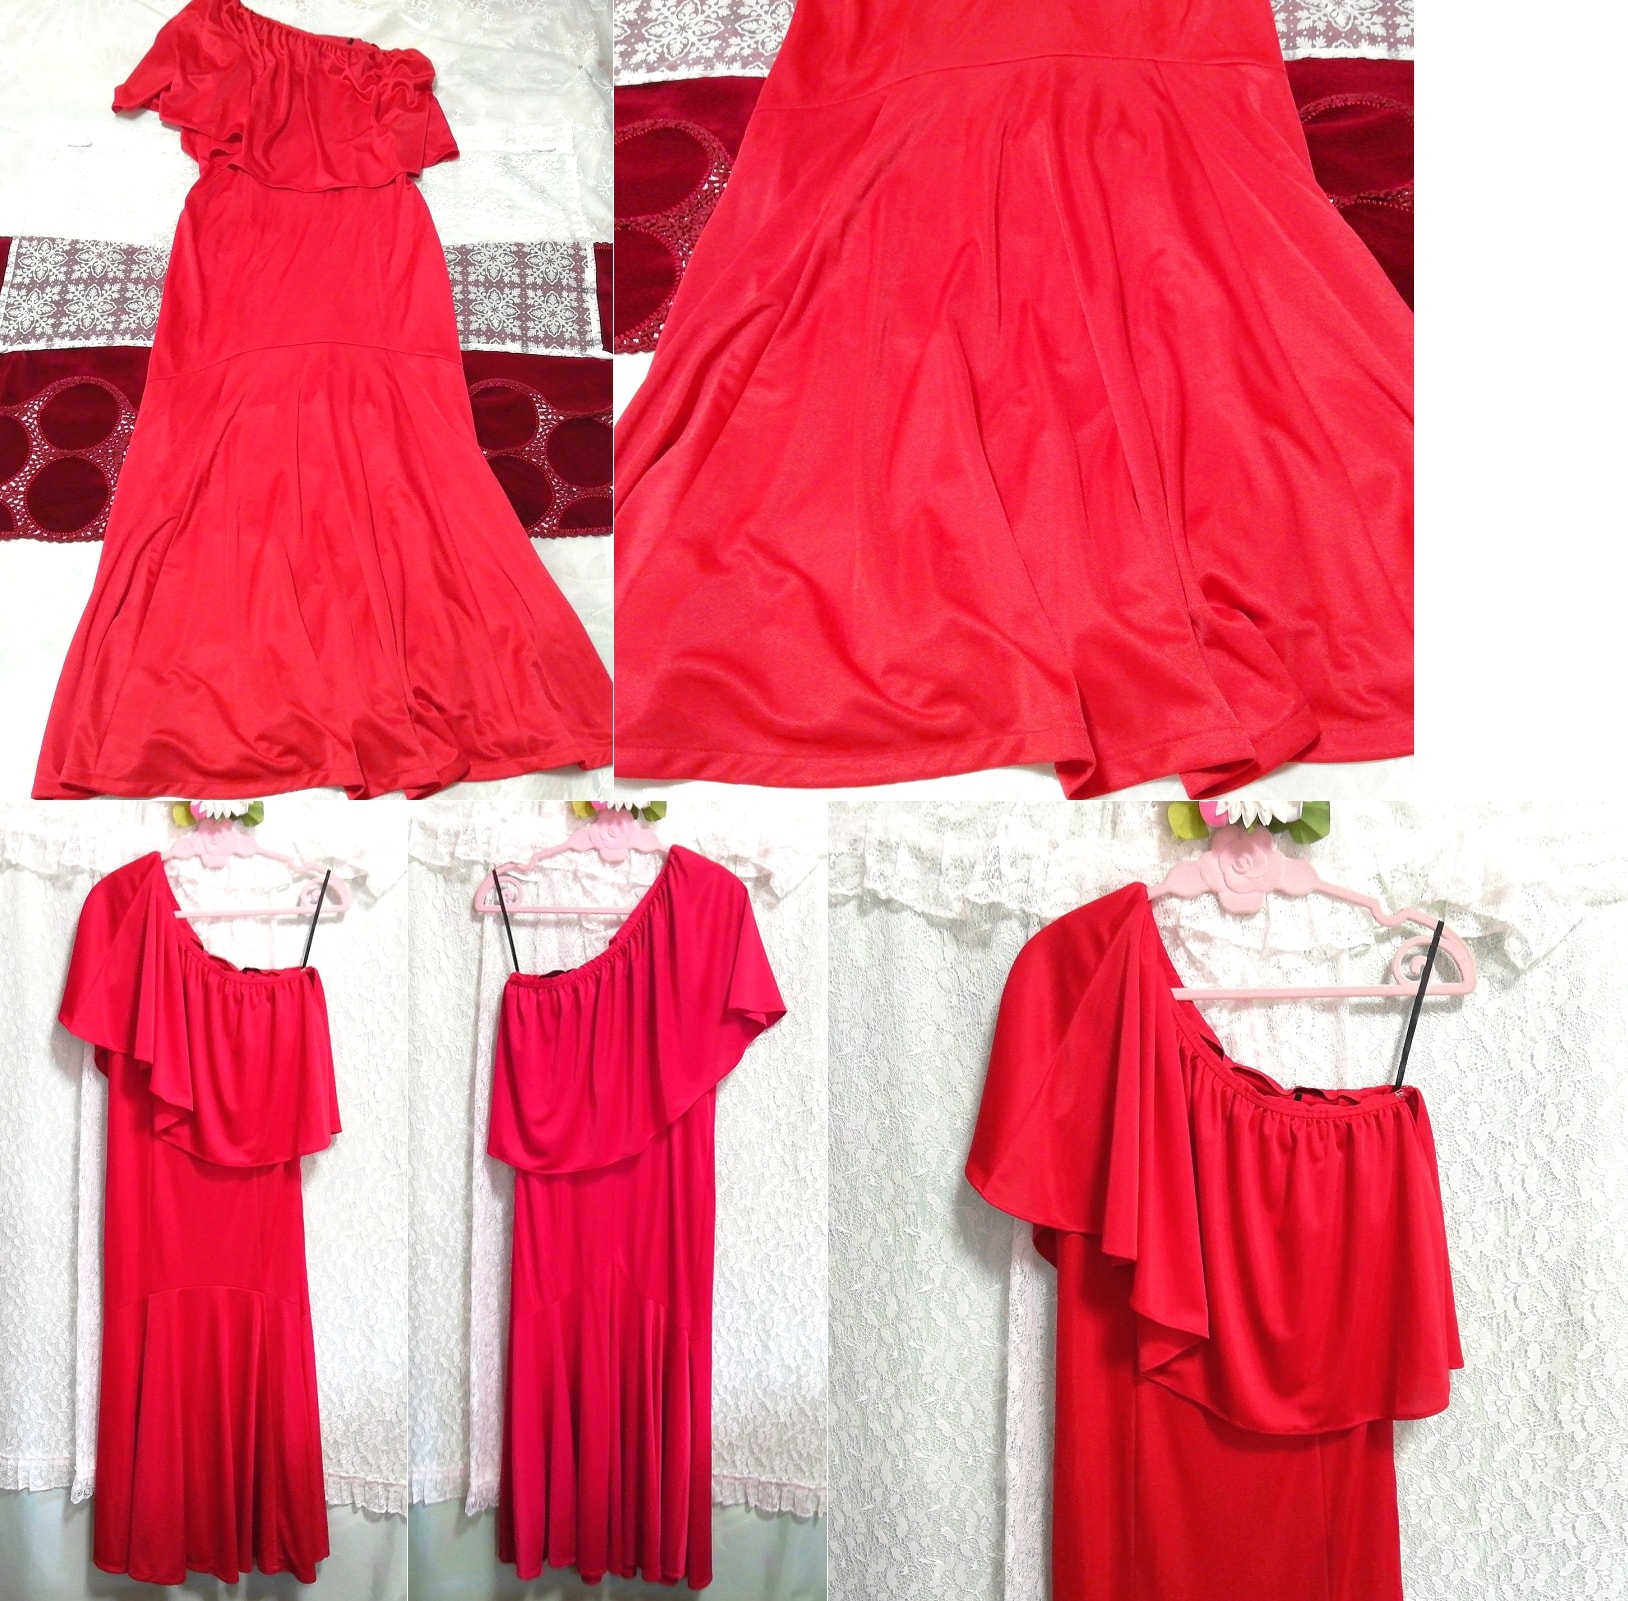 红色长袍睡衣无袖一件式连衣裙, 时尚, 女士时装, 睡衣